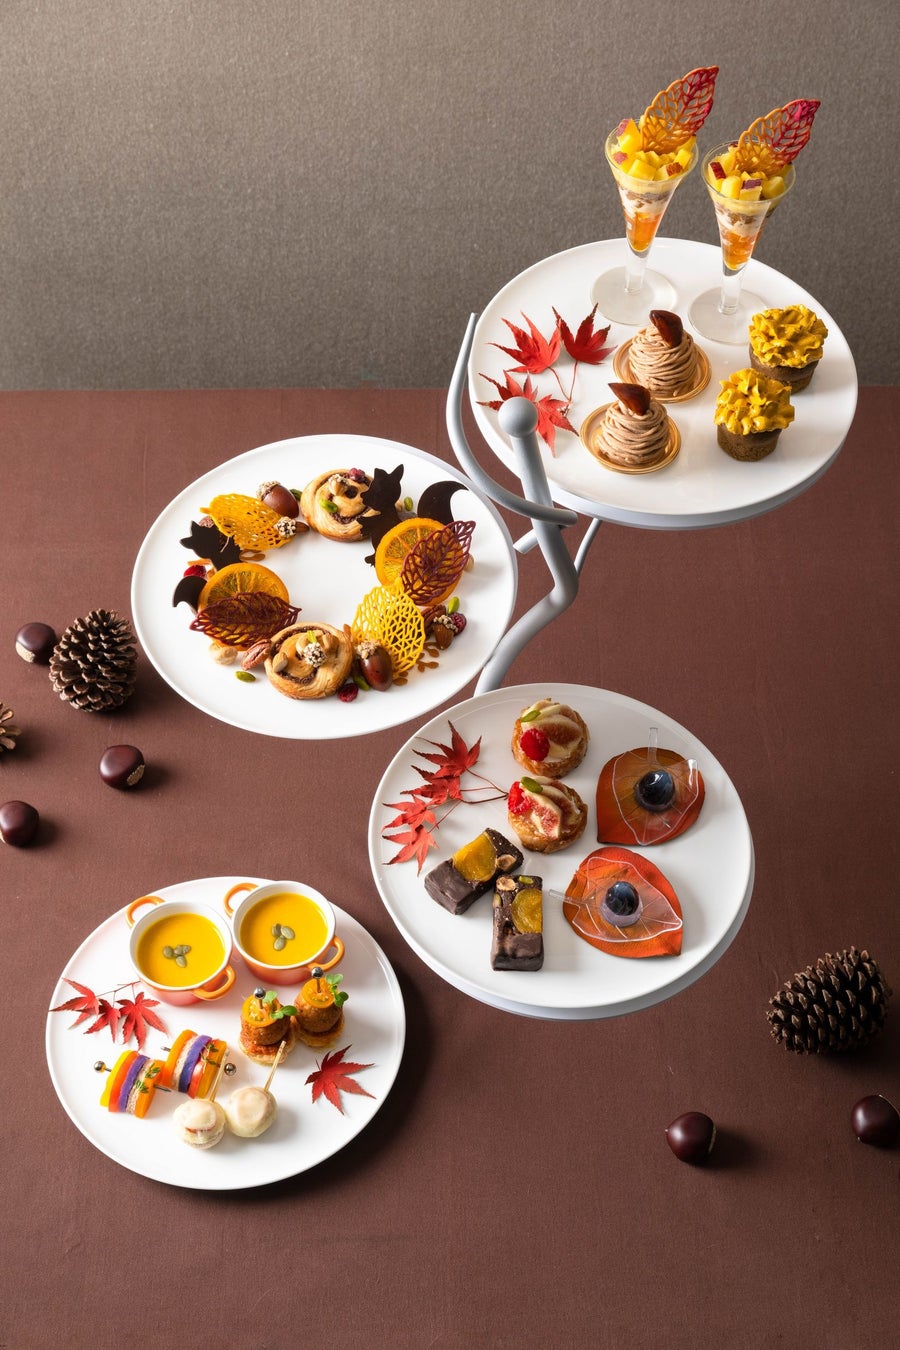 東京マリオットホテル 都会のオアシス・品川御殿山の自然を愛でながら頬張る“秋のお楽しみ”「Afternoon Tea -Autumn Treats-」を発売